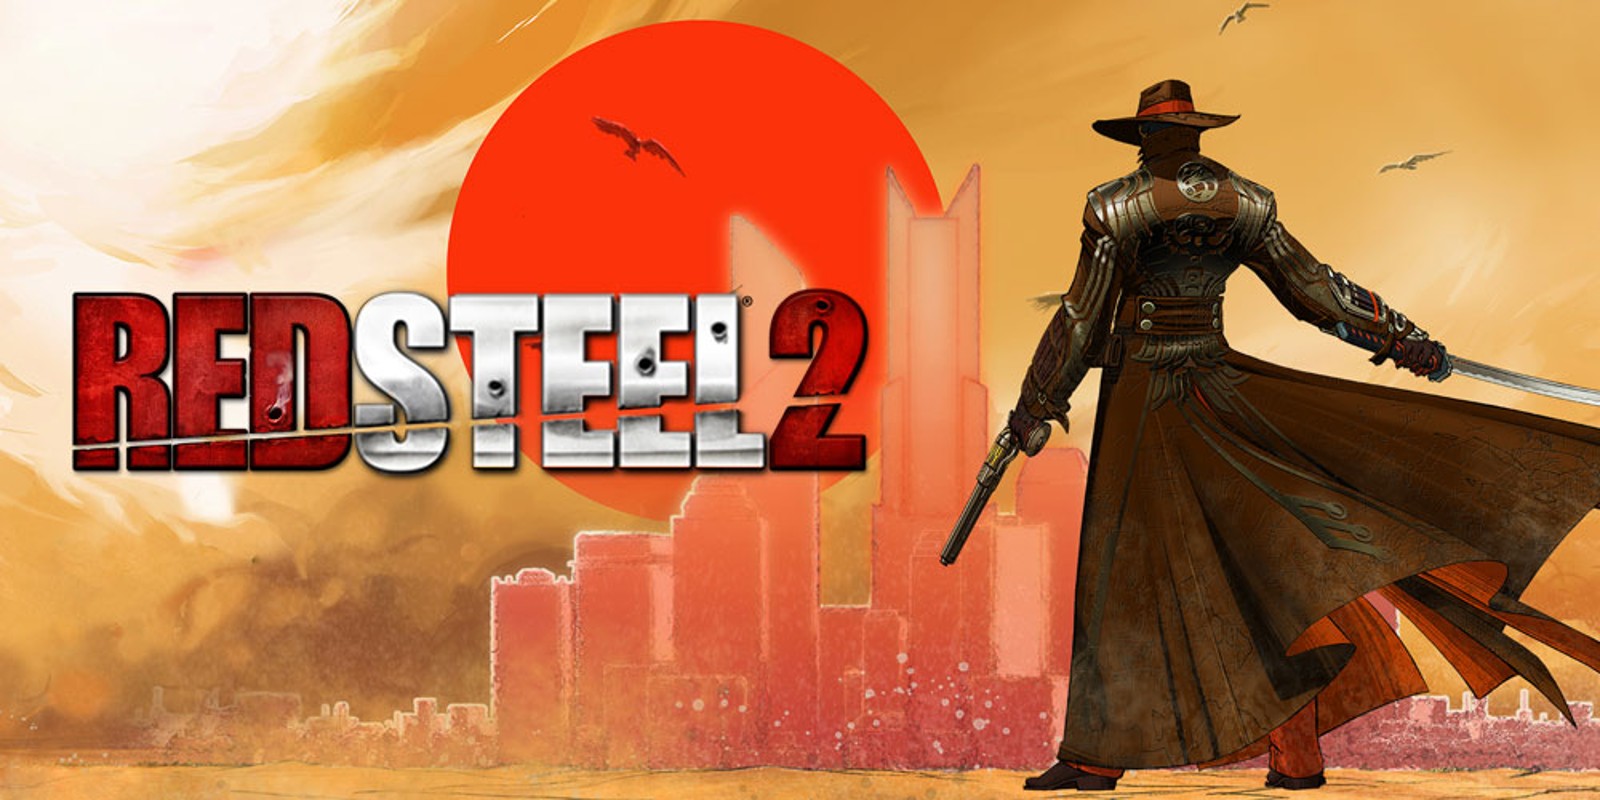 Red Steel 2 | Wii | Games | Nintendo1600 x 800